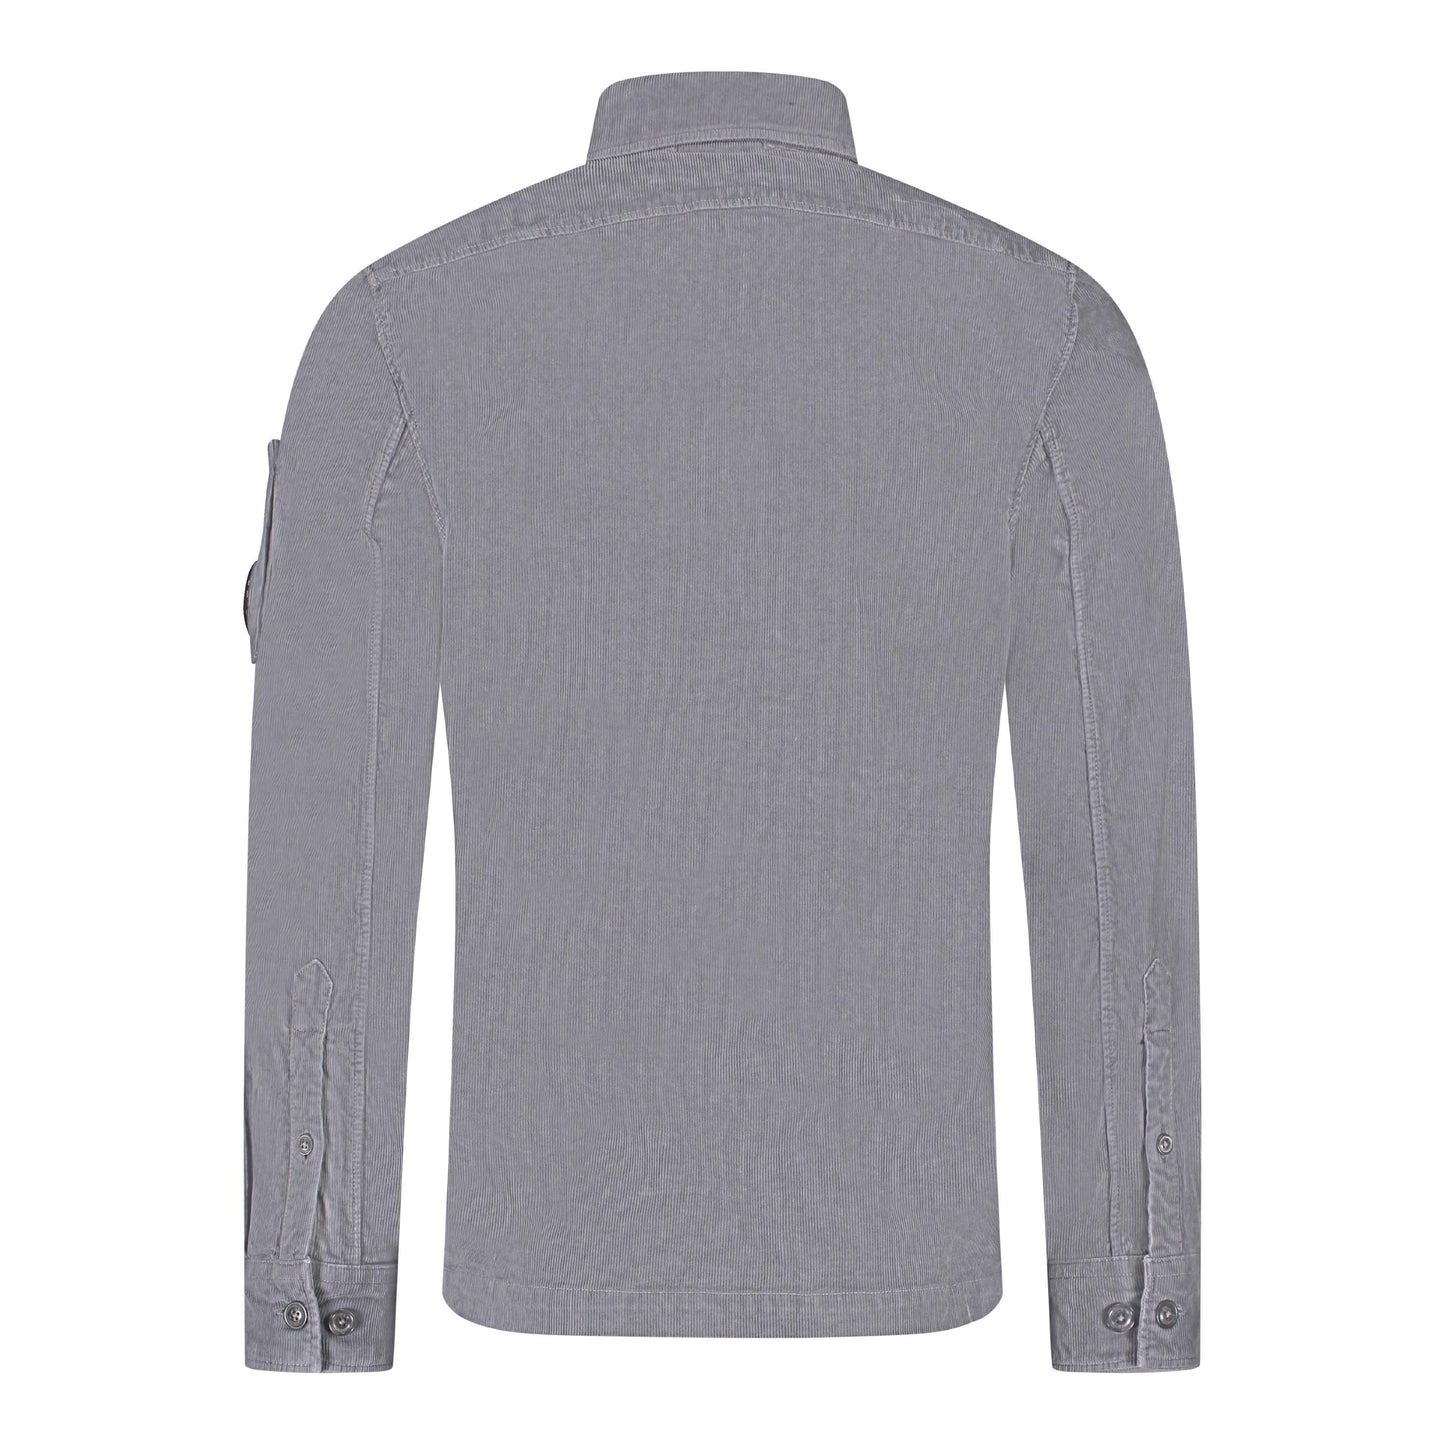 C.P. Company Cord Shirt - 960 Grey - Escape Menswear